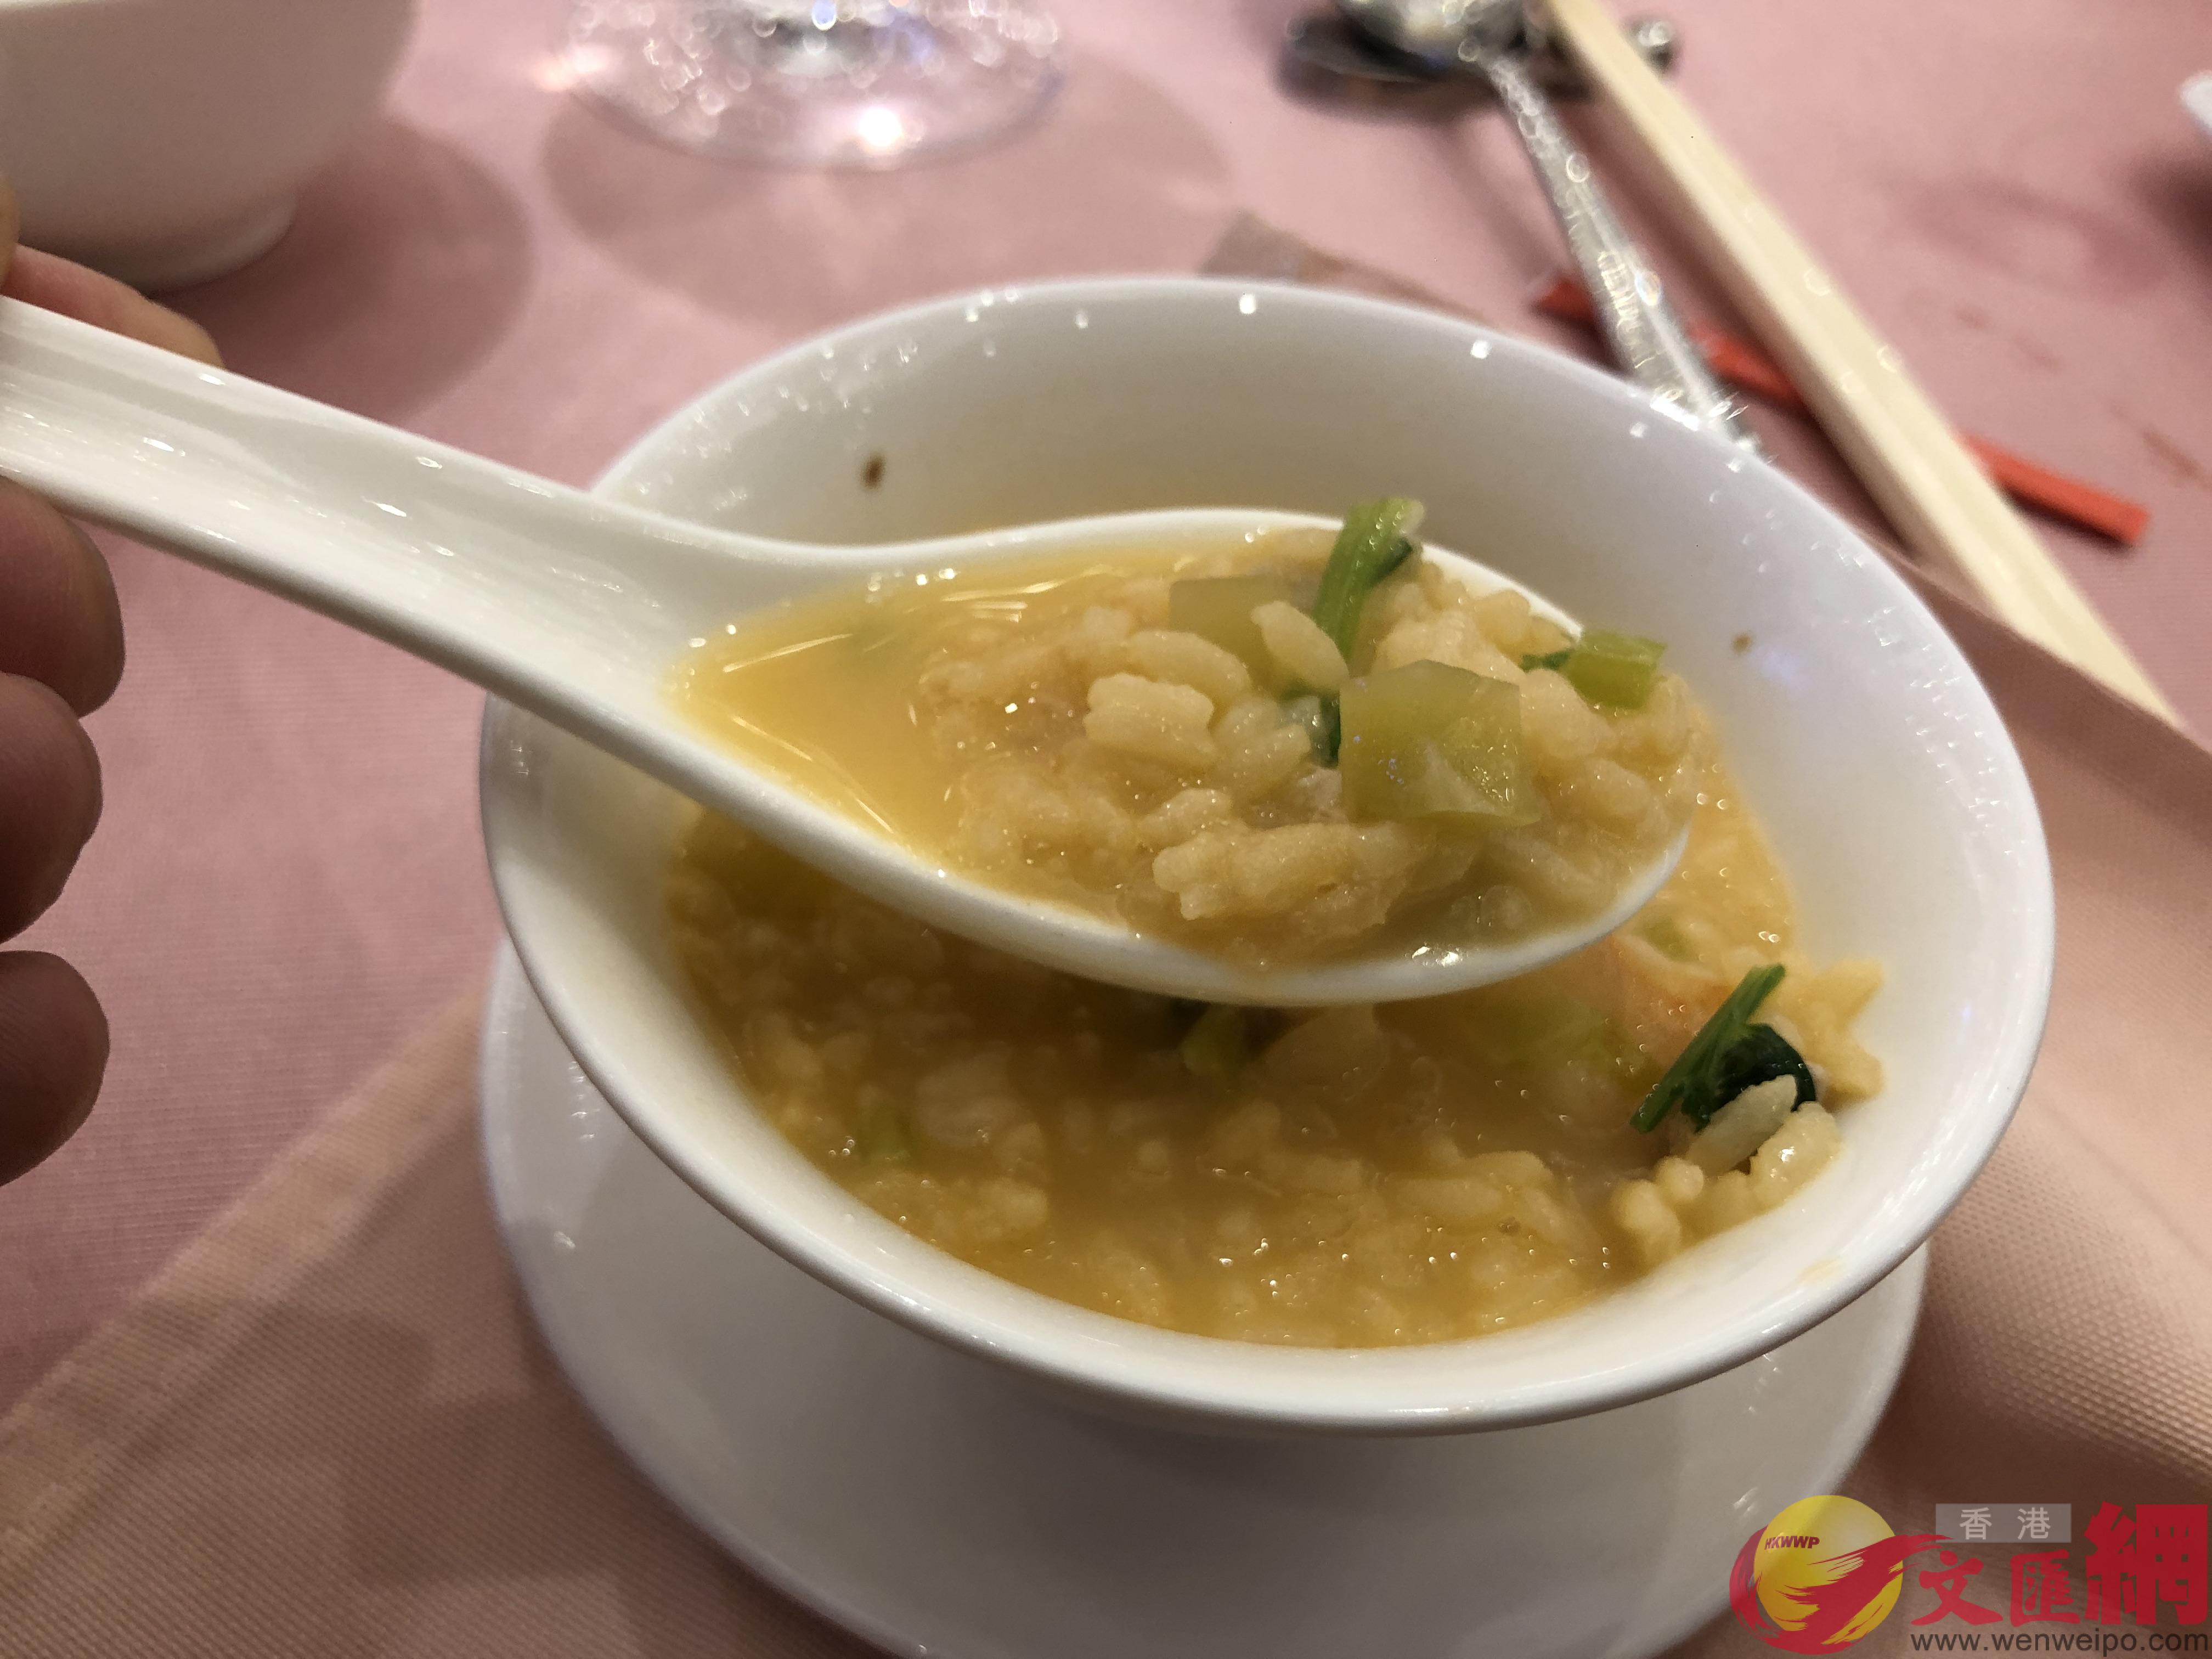 香港廚皇製作的u西施泡飯vA現已風行於全國各大餐飲C(方俊明攝) 